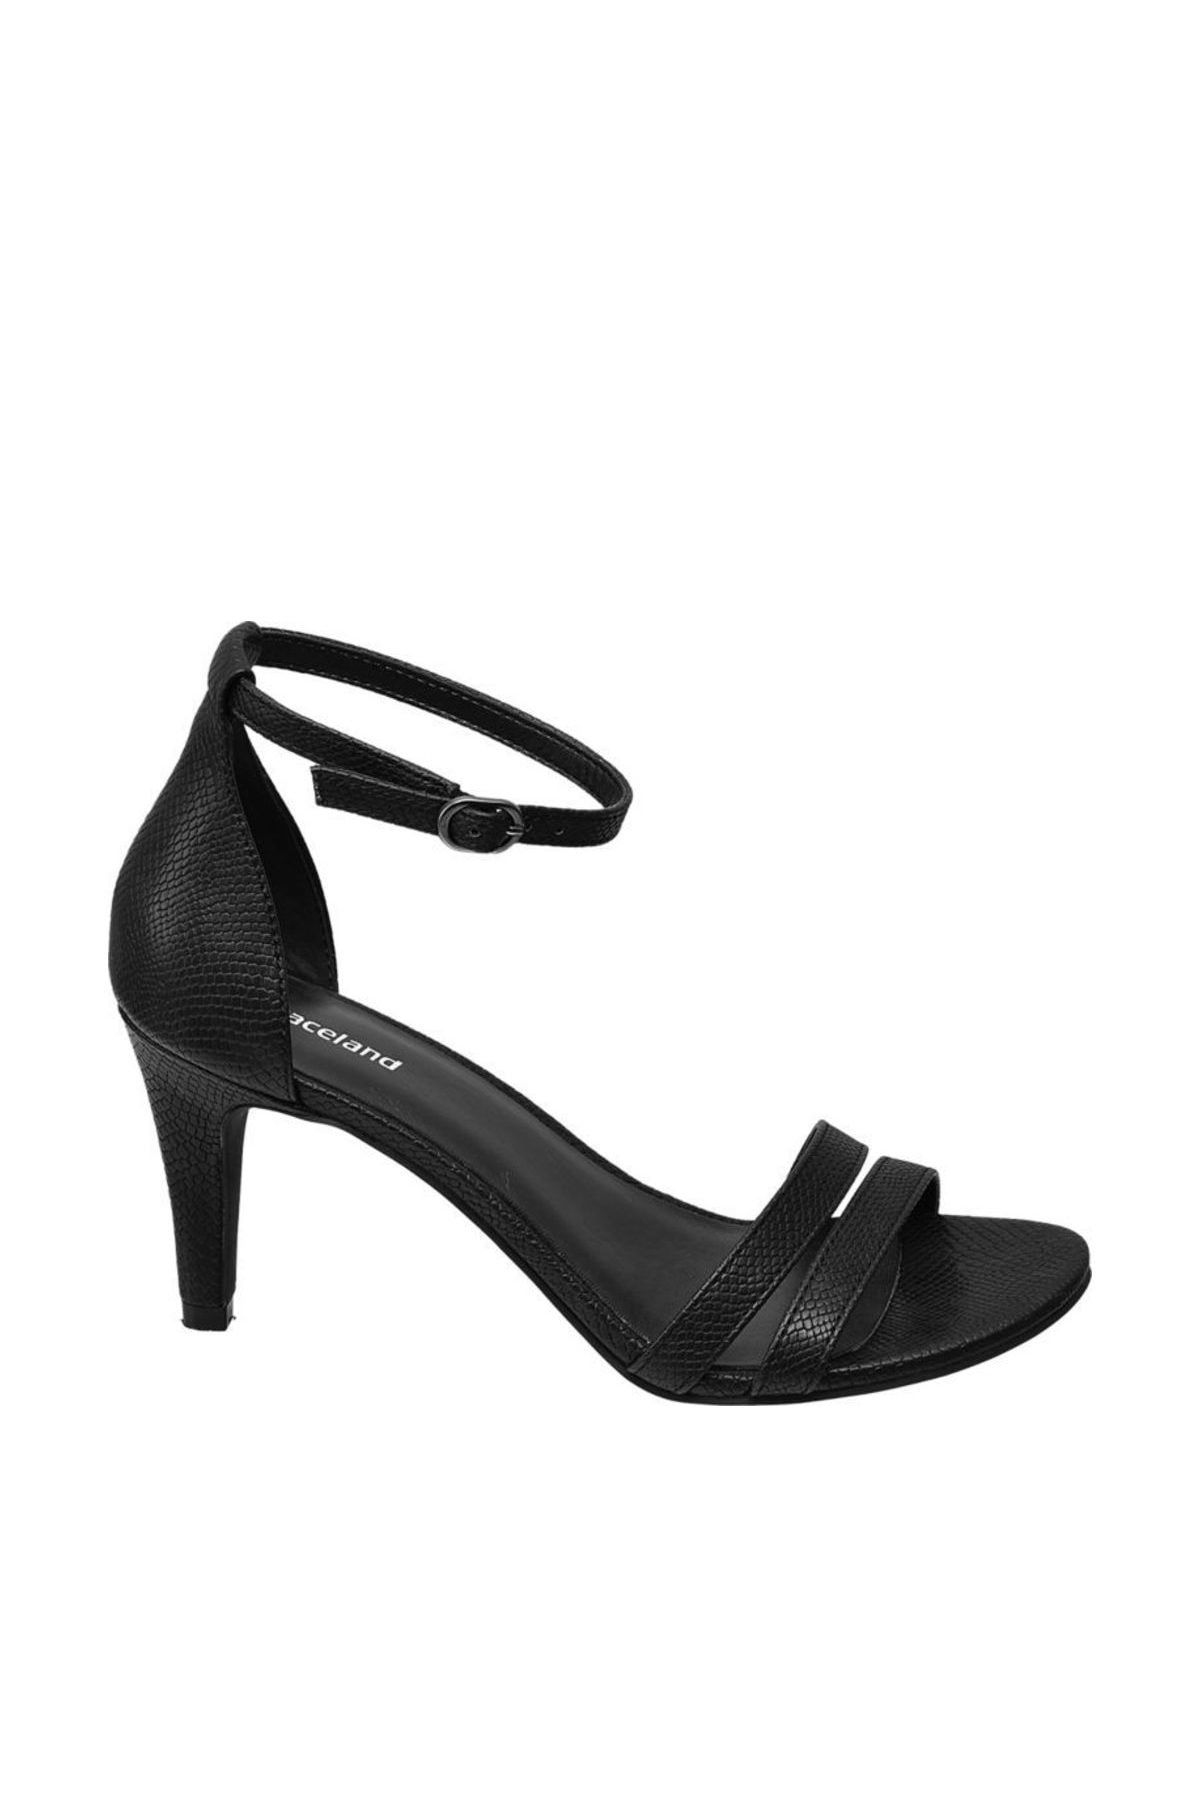 Graceland Deichmann Kadın Siyah Klasik Topuklu Ayakkabı